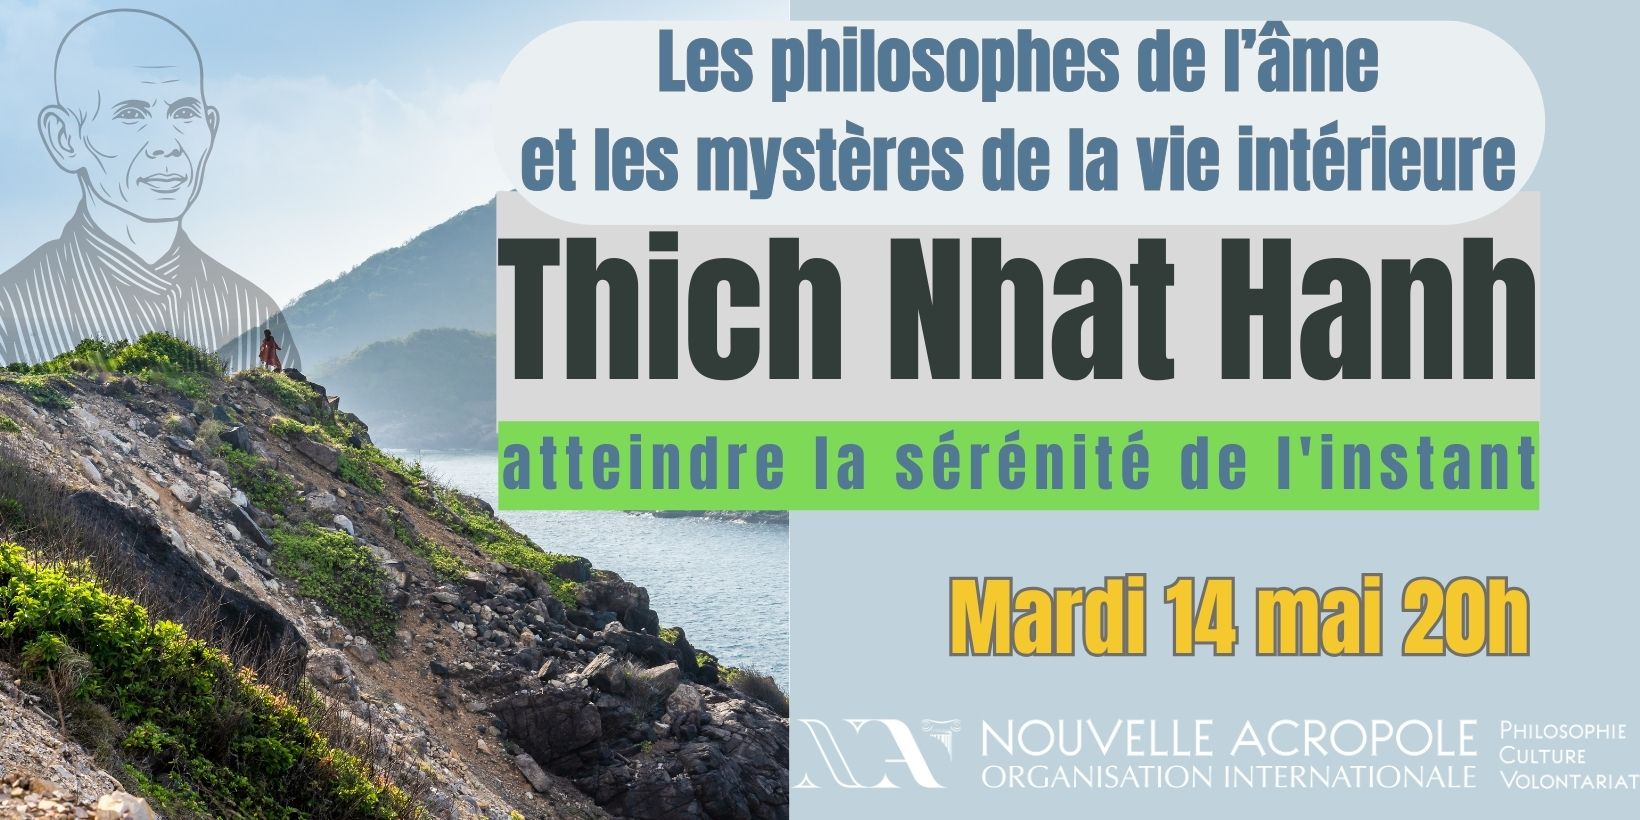 Les philosophes de l’âme et les mystères de la vie intérieure : Thich Nhat Hanh et la sérénité de l’instant